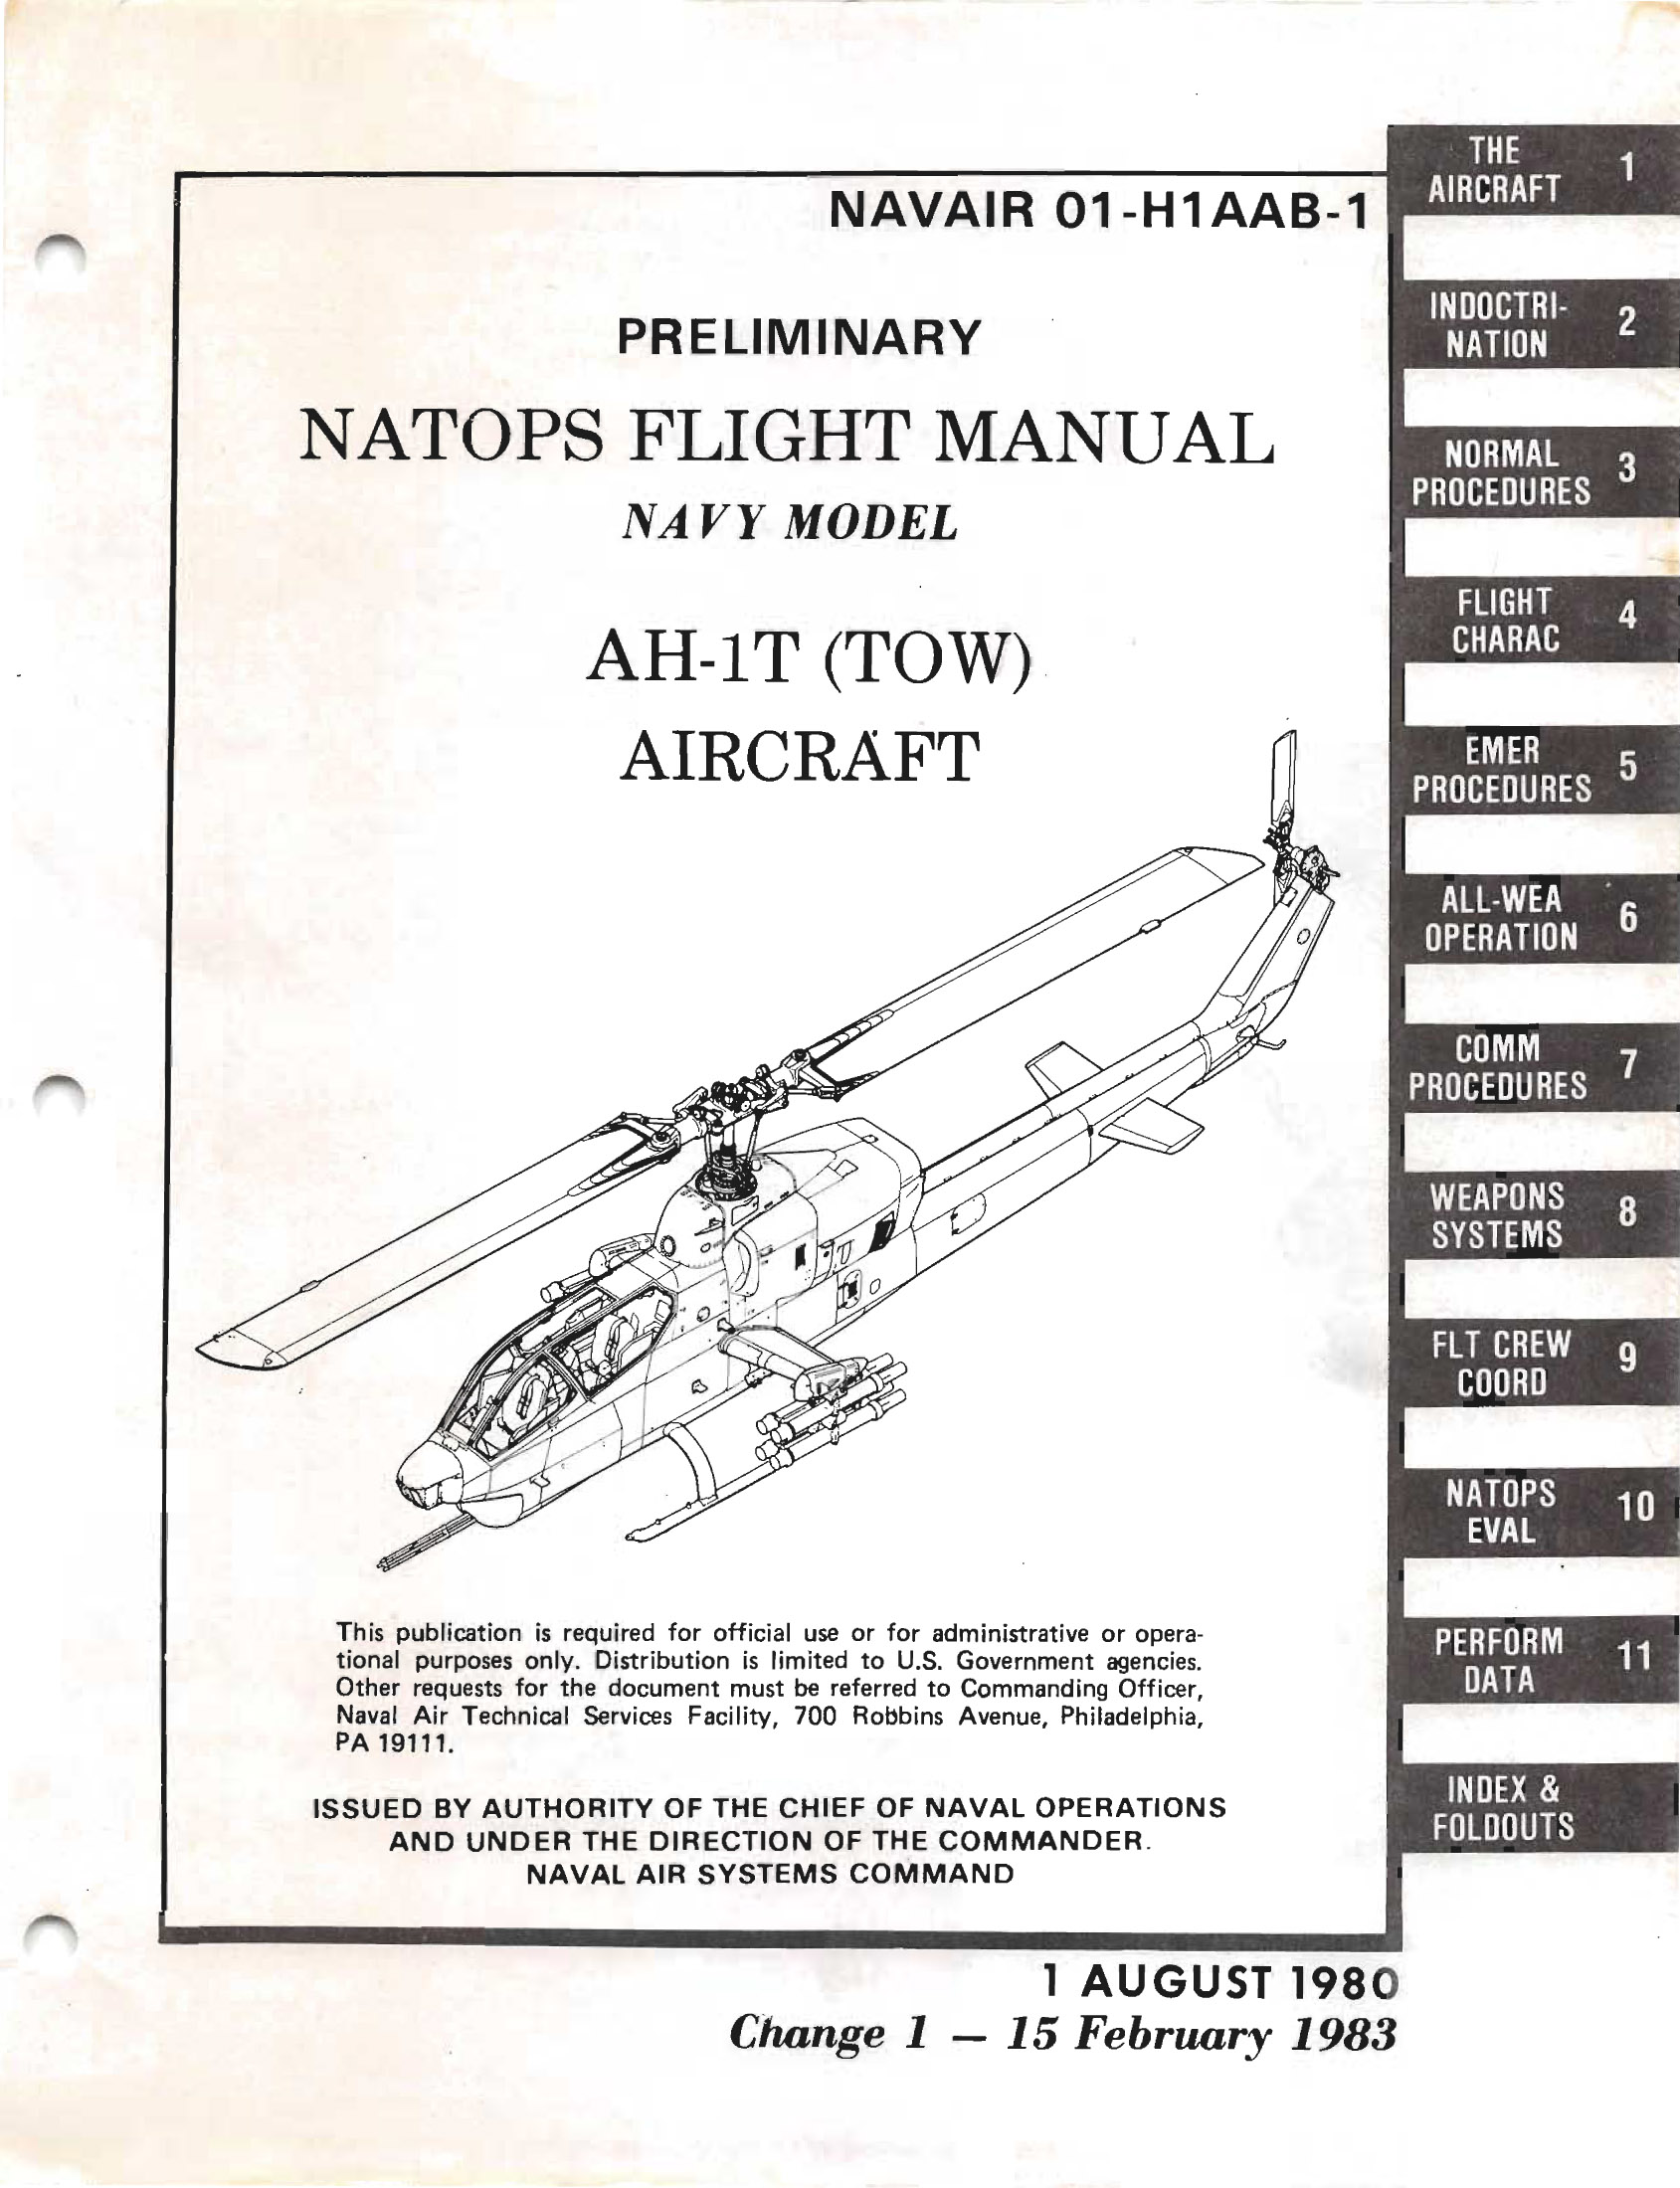 Bell Ah 1 Cobra Flight Manuals